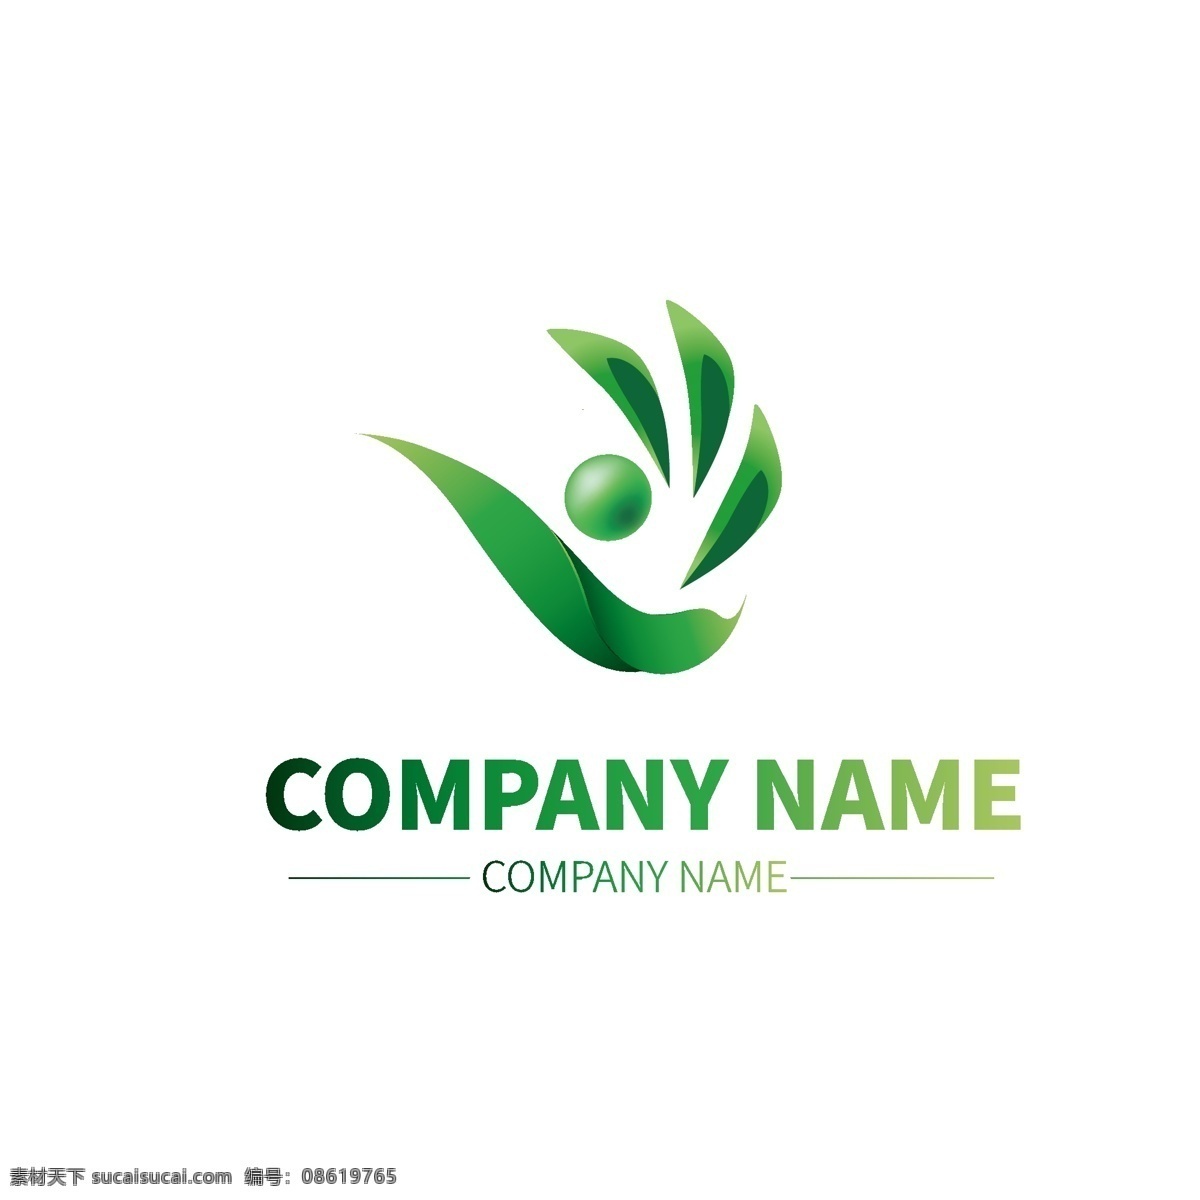 茶叶 种植 公司 企业 形状 商标 logo 颜色 标示 妇联logo 高档logo 公司logo 时尚logo 广告logo logo设计